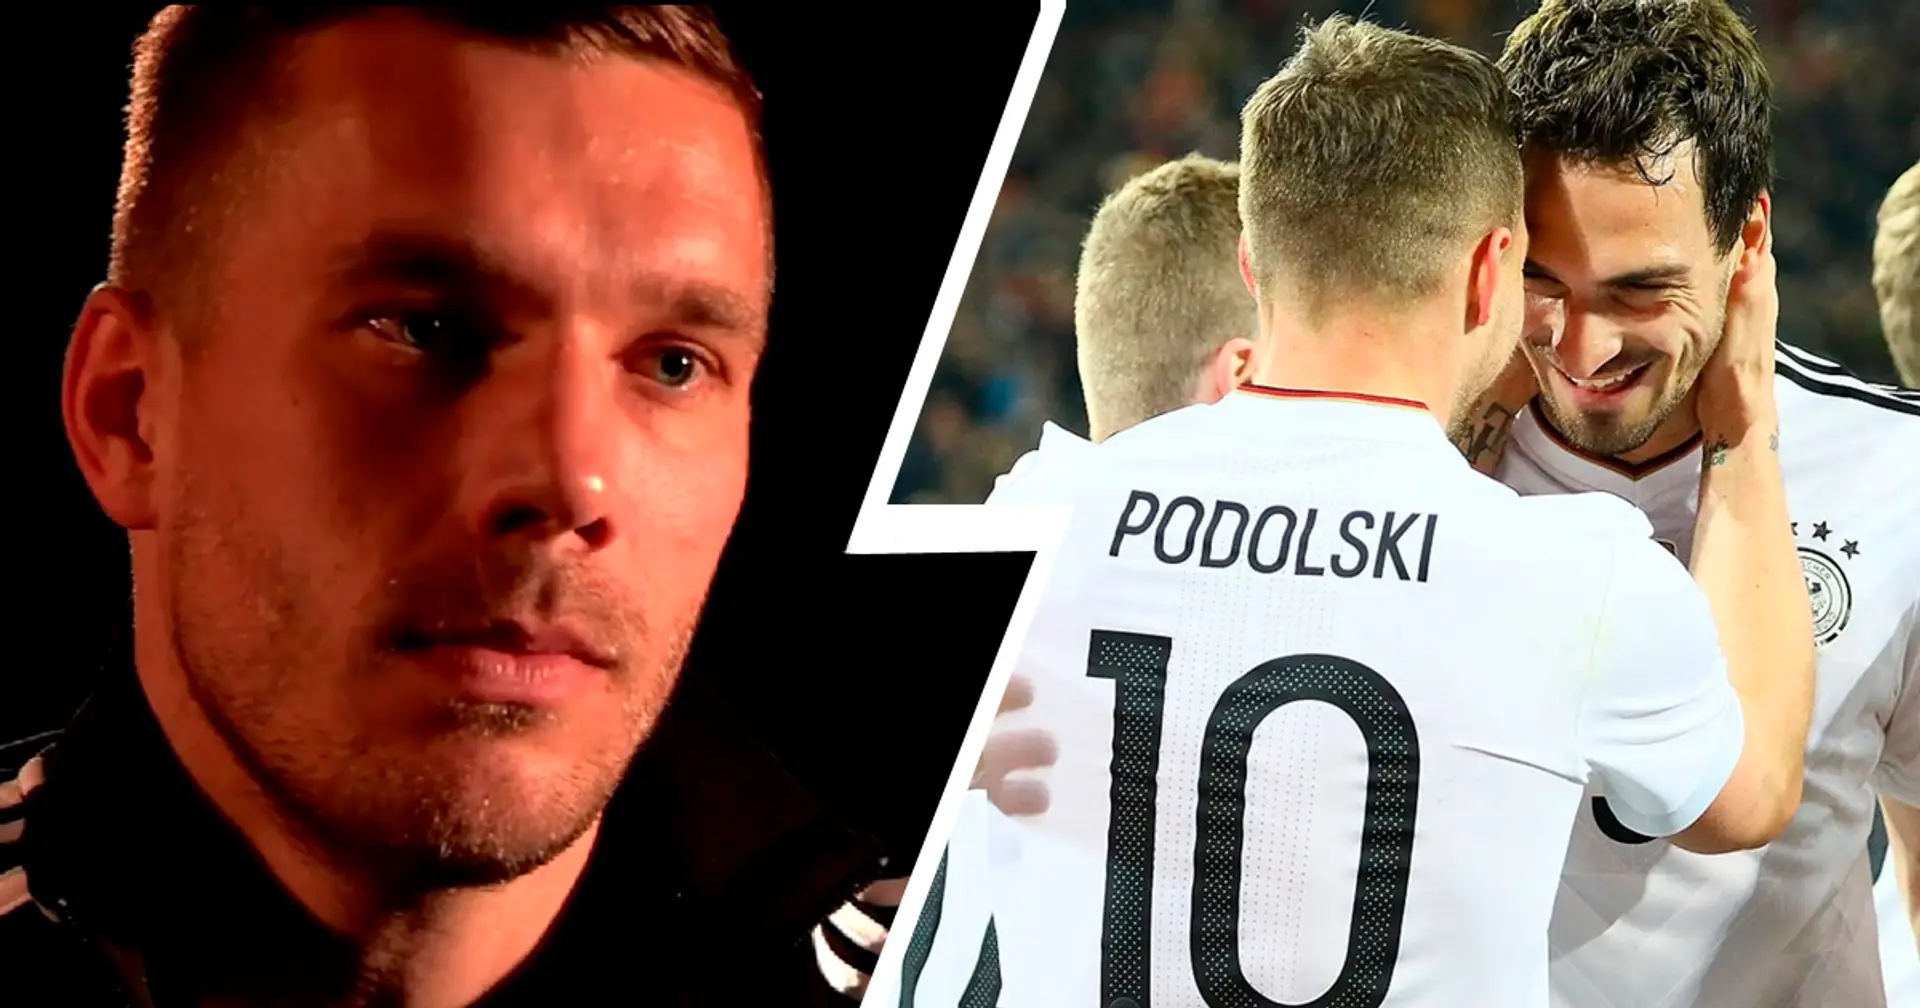 "Mats hat die Erfahrung": Podolski nennt Bedingung für Hummels' WM-Nominierung